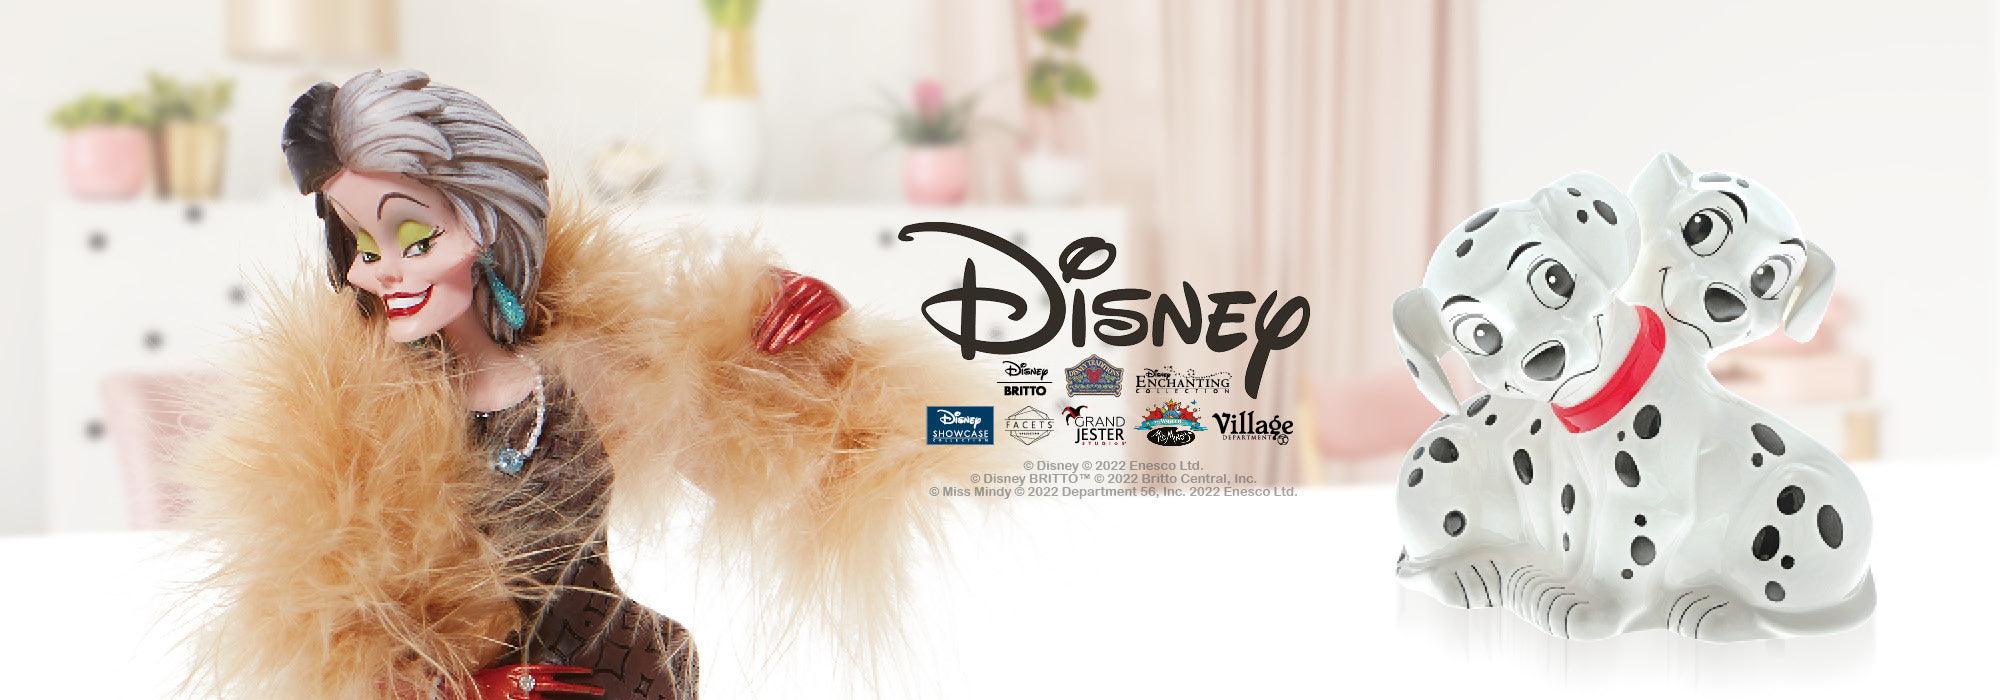 Disney Showcase — Enesco Gift Shop